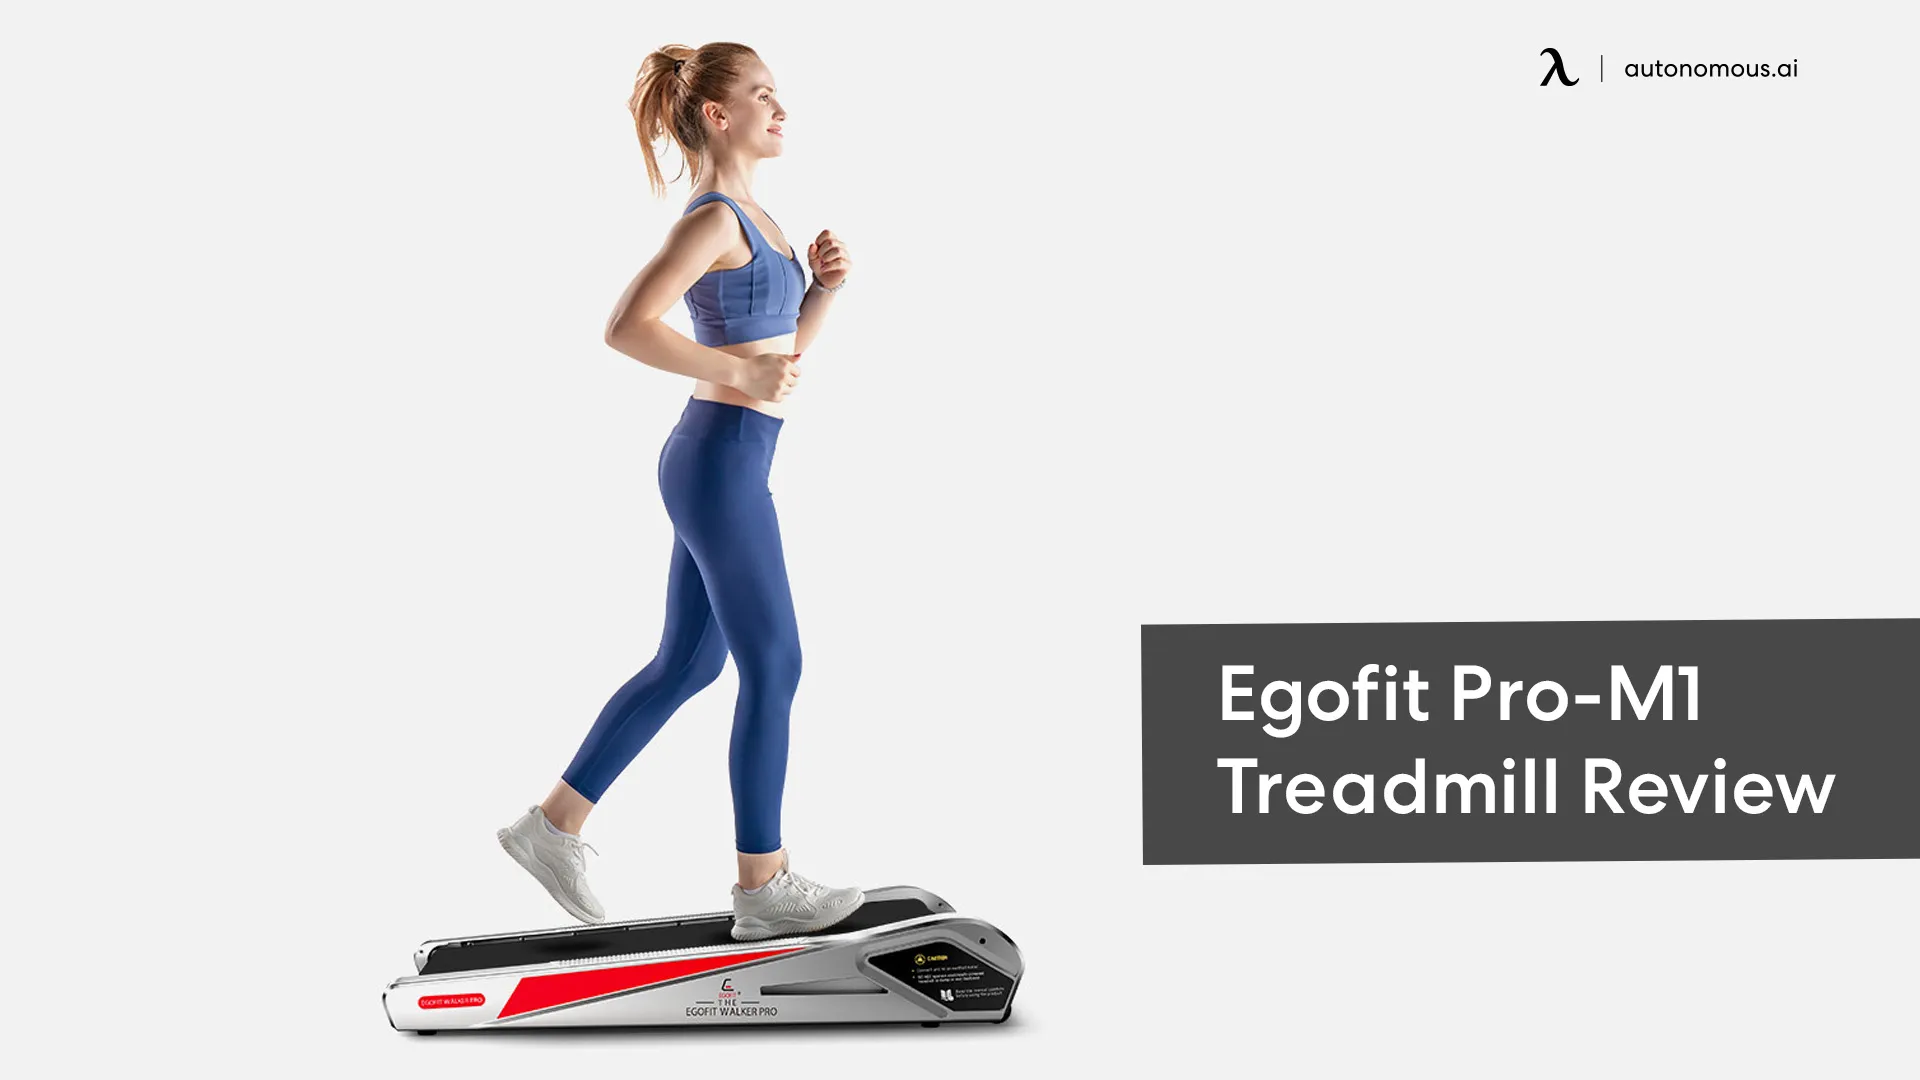 Egofit Compact Walk-Jog Treadmill Pro-M1 Review